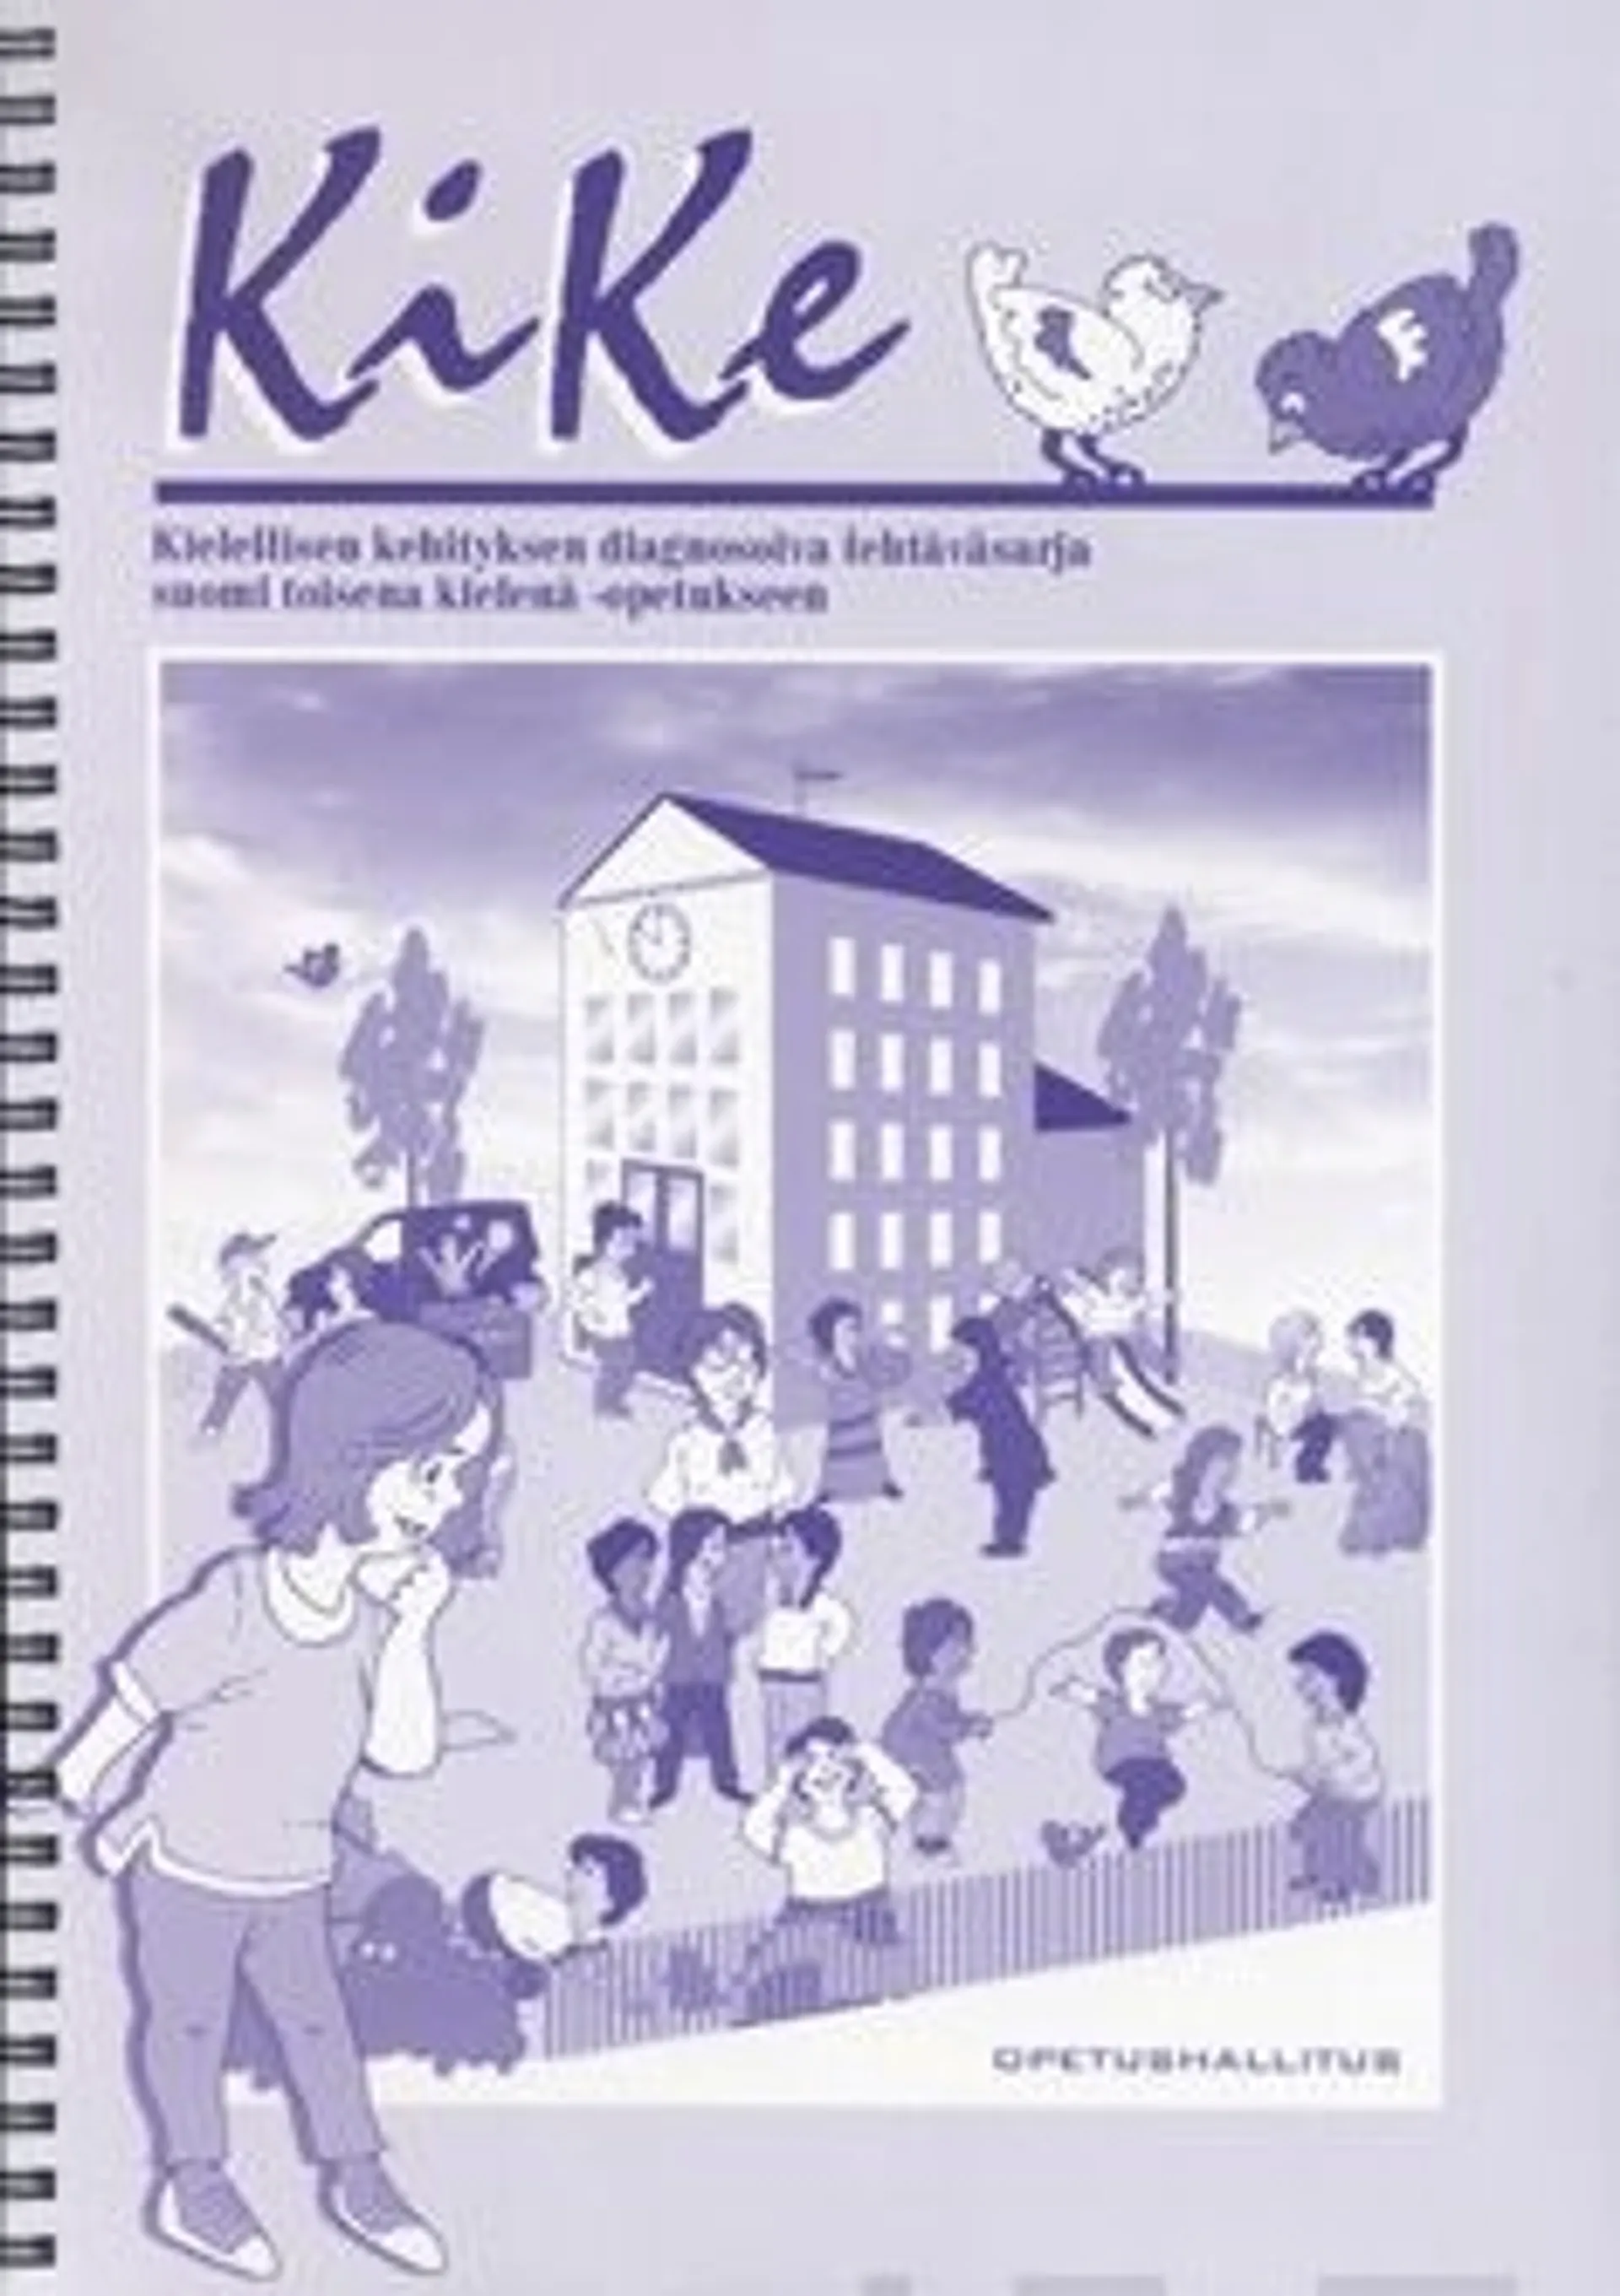 Kike (+cd) - Kielellisen kehityksen diagnosoiva tehtäväsarja suomi toisena kielenä -opetukseen